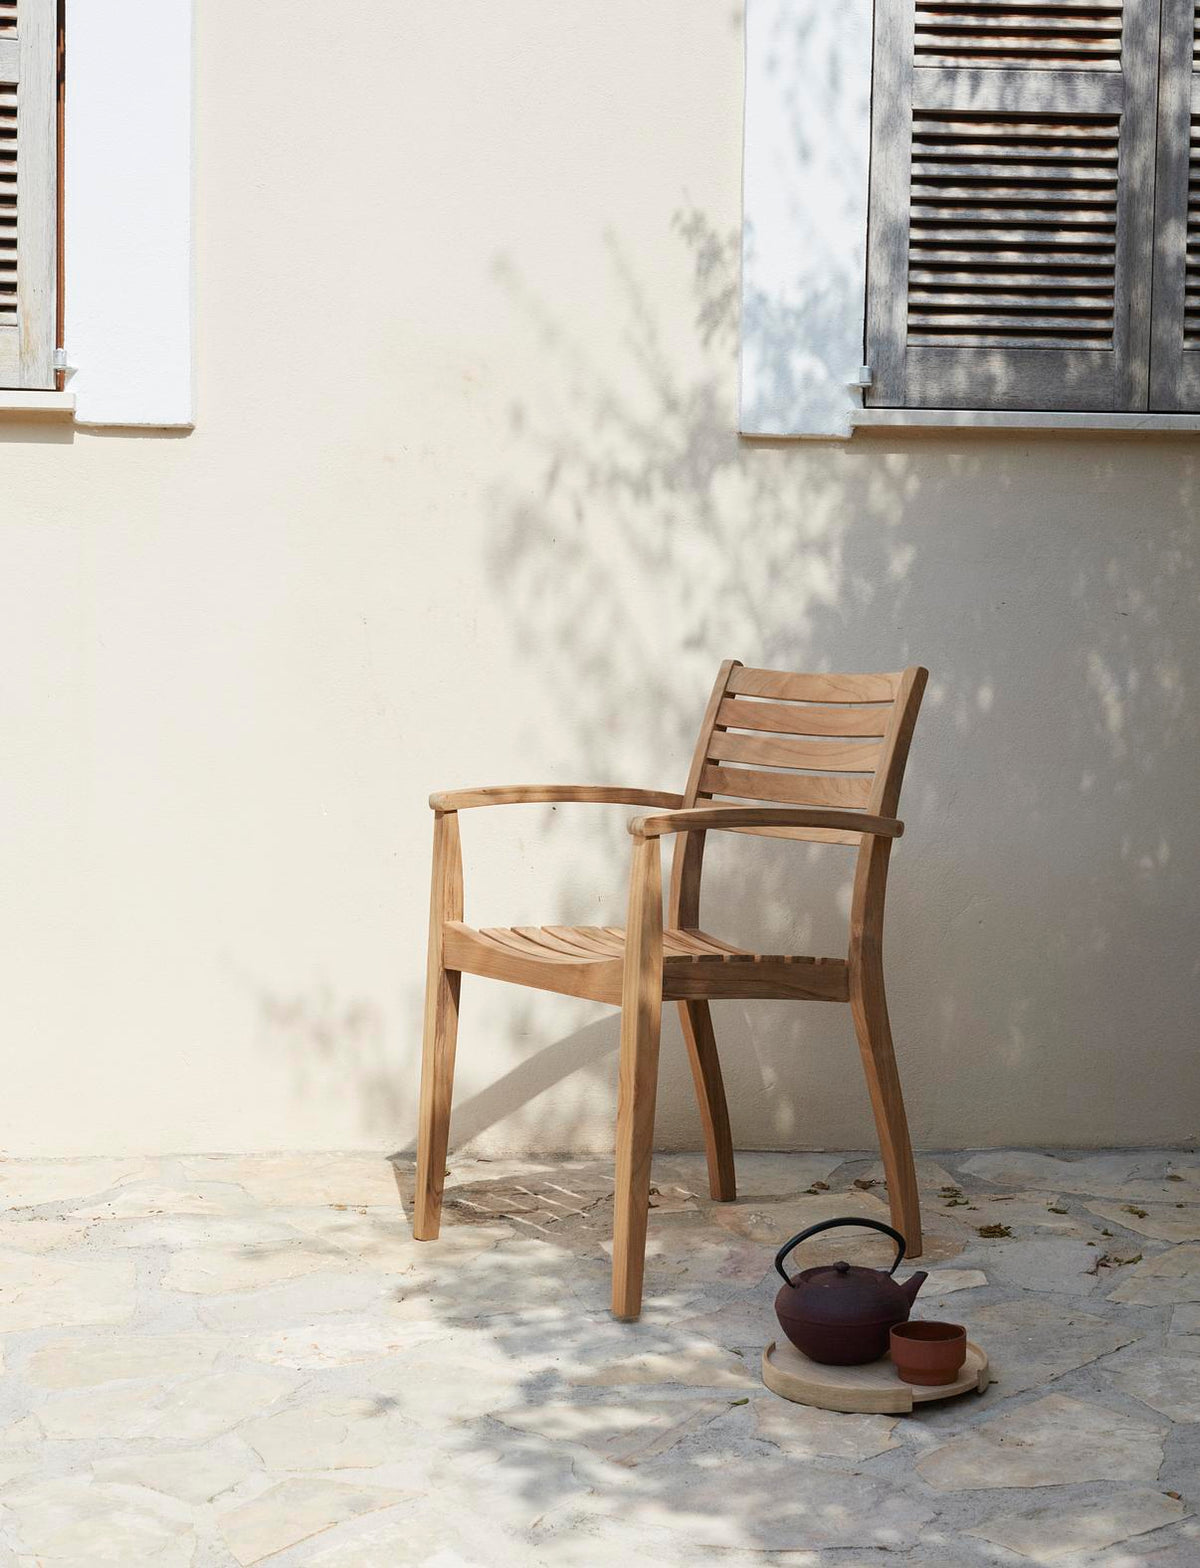 Ballare Chair by Skagerak by Fritz Hansen